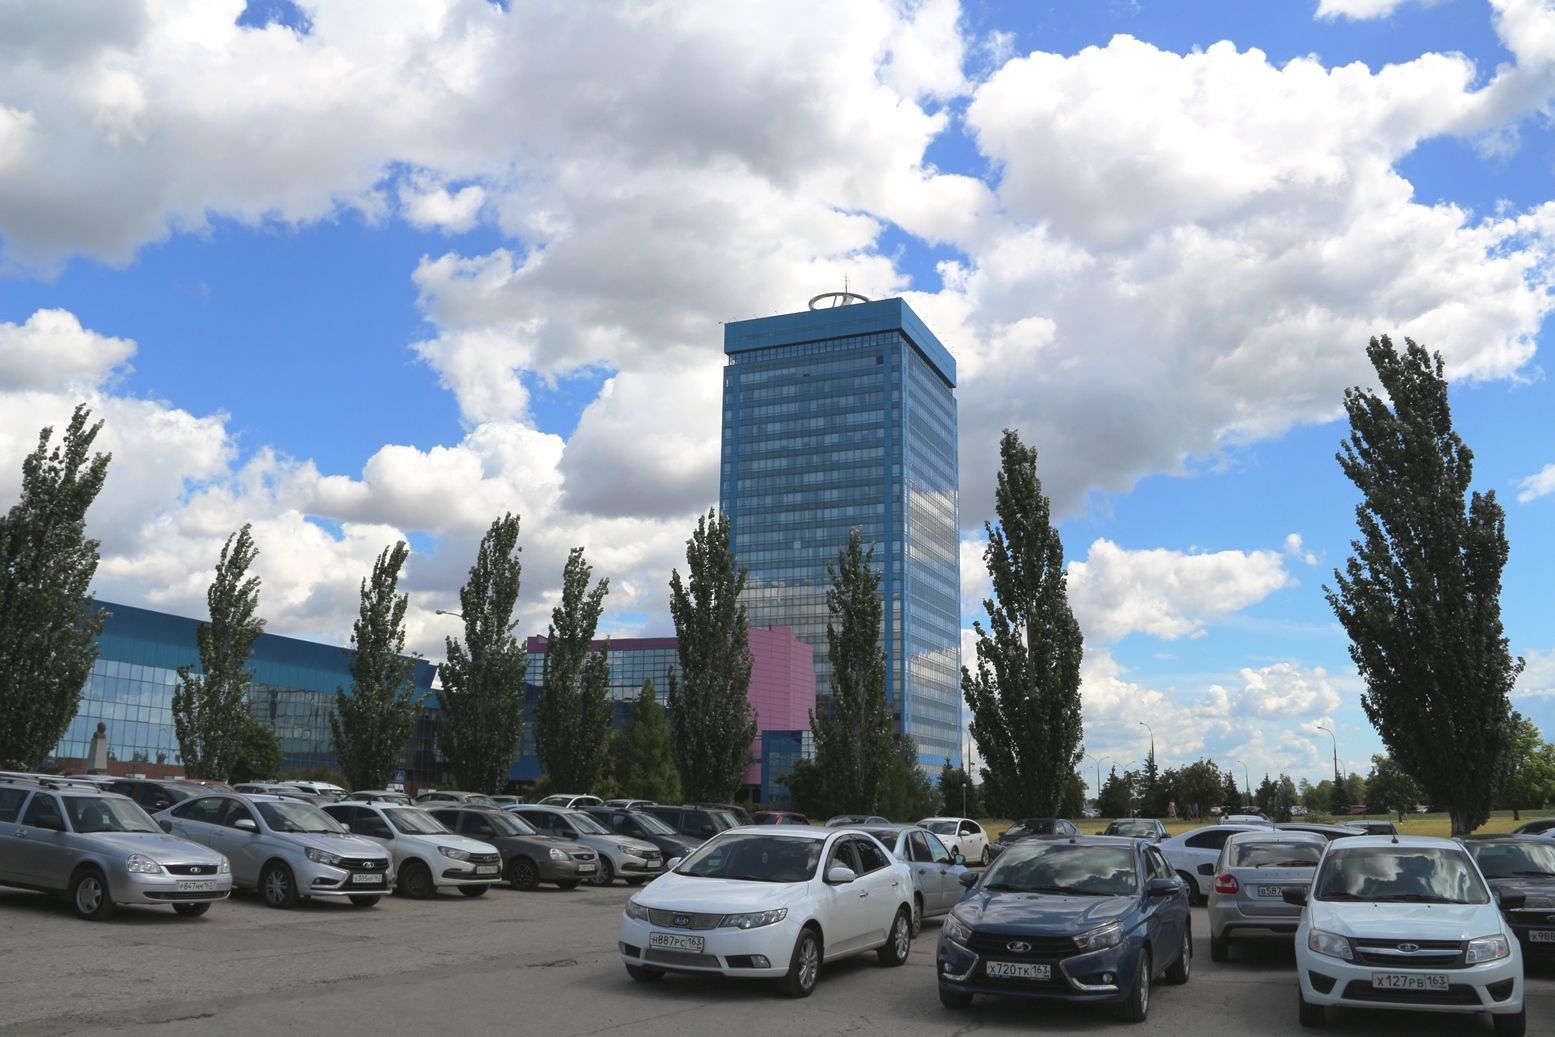 АВТОВАЗ планируется включить в туристические маршруты России.